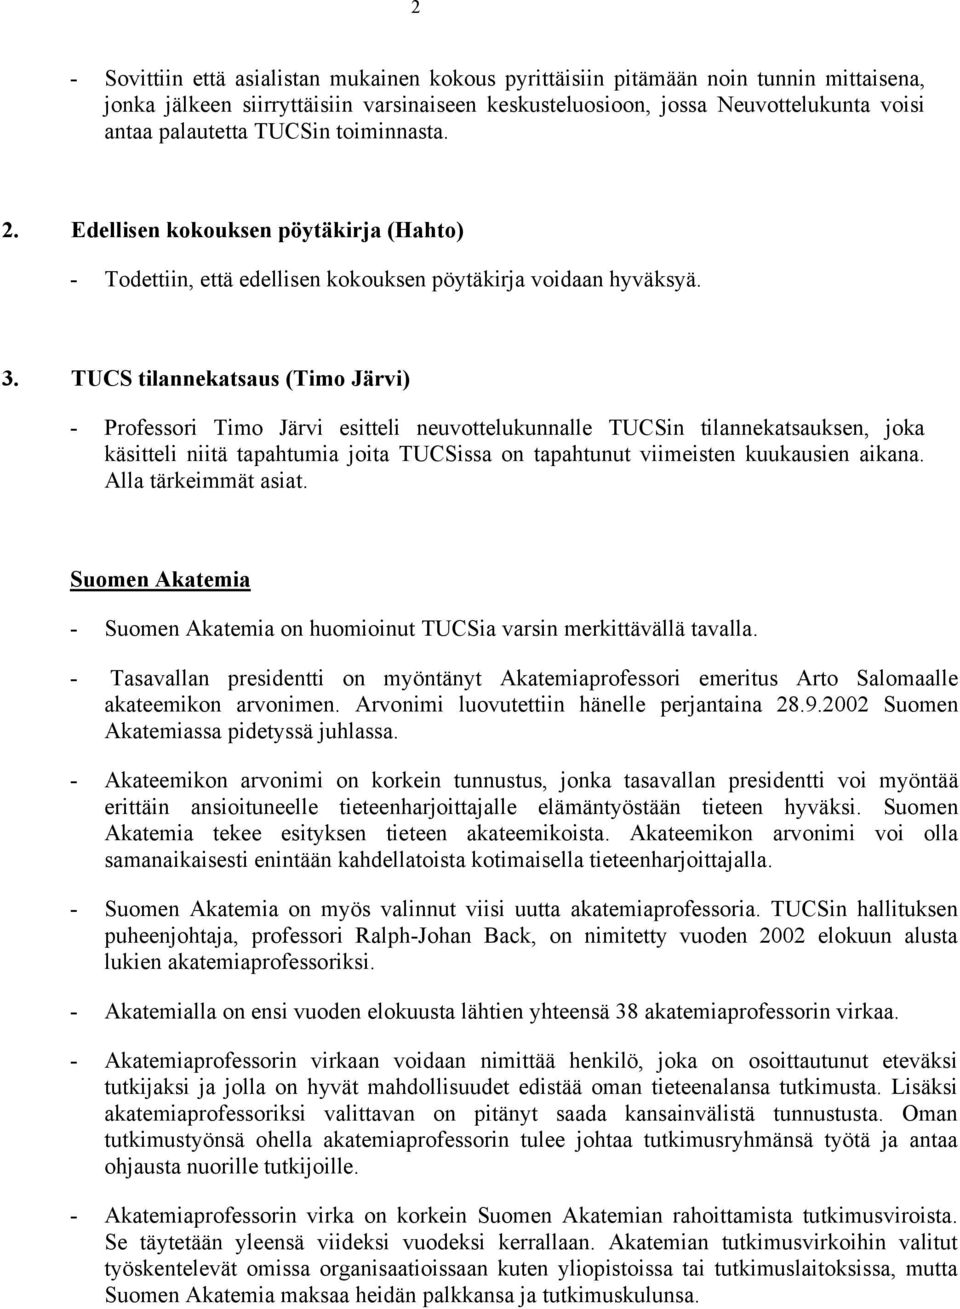 TUCS tilannekatsaus (Timo Järvi) - Professori Timo Järvi esitteli neuvottelukunnalle TUCSin tilannekatsauksen, joka käsitteli niitä tapahtumia joita TUCSissa on tapahtunut viimeisten kuukausien